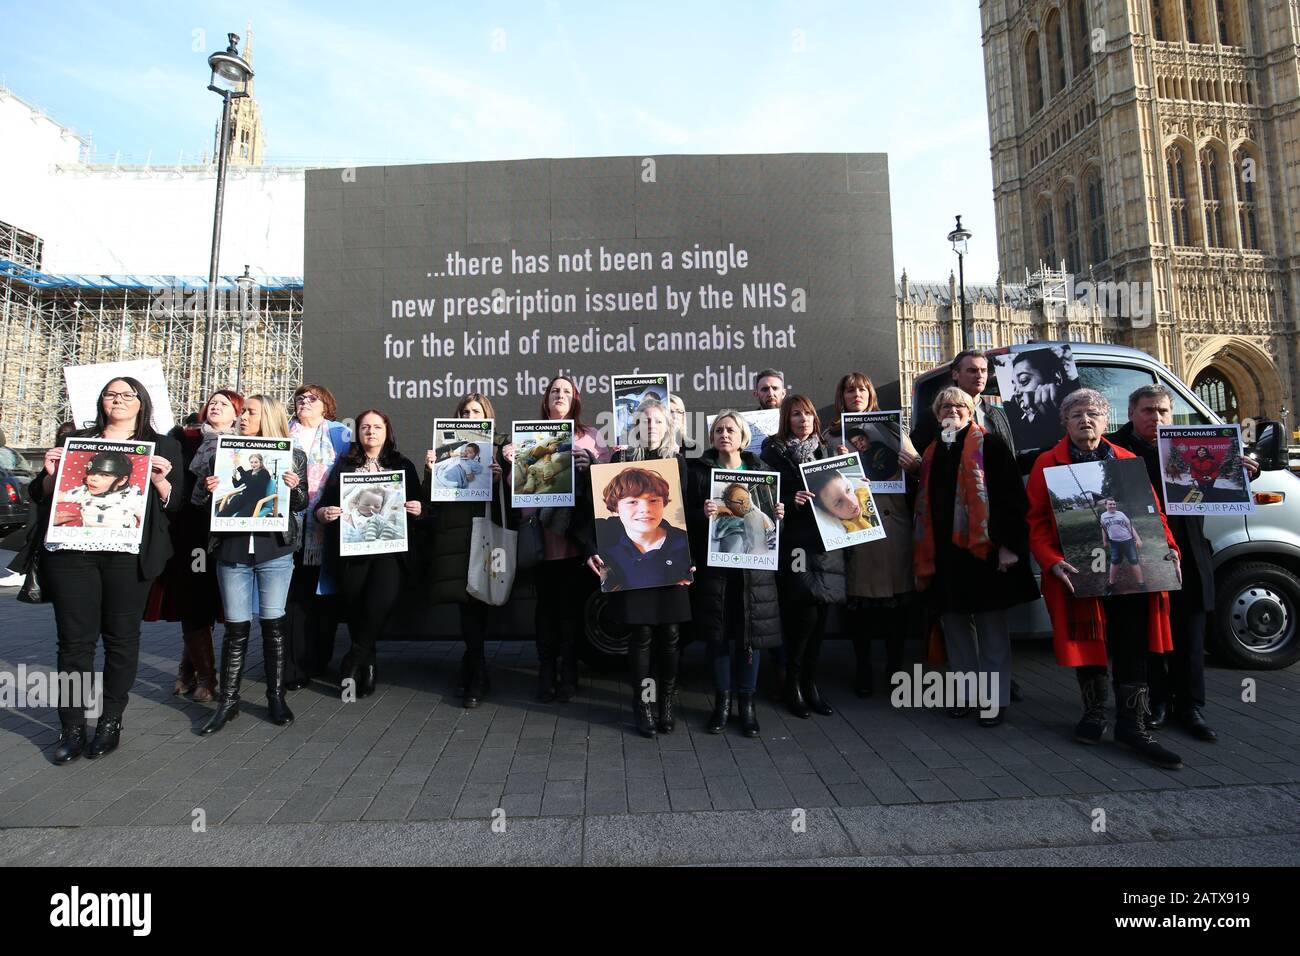 Les activistes tiennent des pancartes devant une fourgonnette affichant une vidéo dans Old Palace Yard, Westminster, alors que les familles avec des enfants gravement épileptiques se présentent dans une pétition au 10 Downing Street, Londres, appelant à l'accès au cannabis médical sur le NHS. Banque D'Images